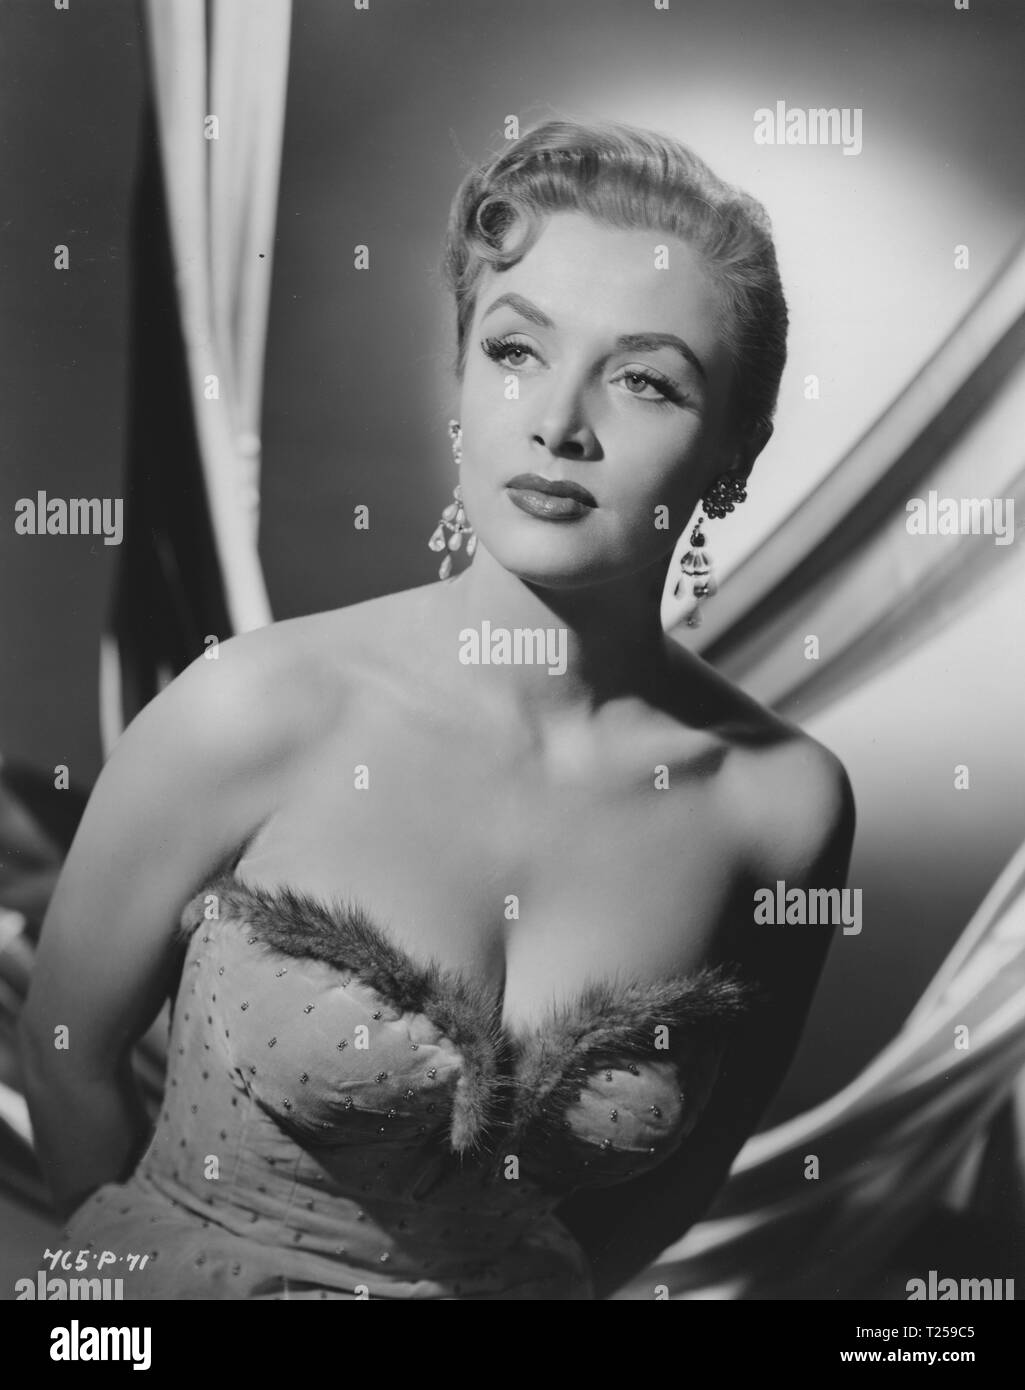 Le navire qui est mort de honte (1955), chanteuse, Yana, Date : 1955 Banque D'Images